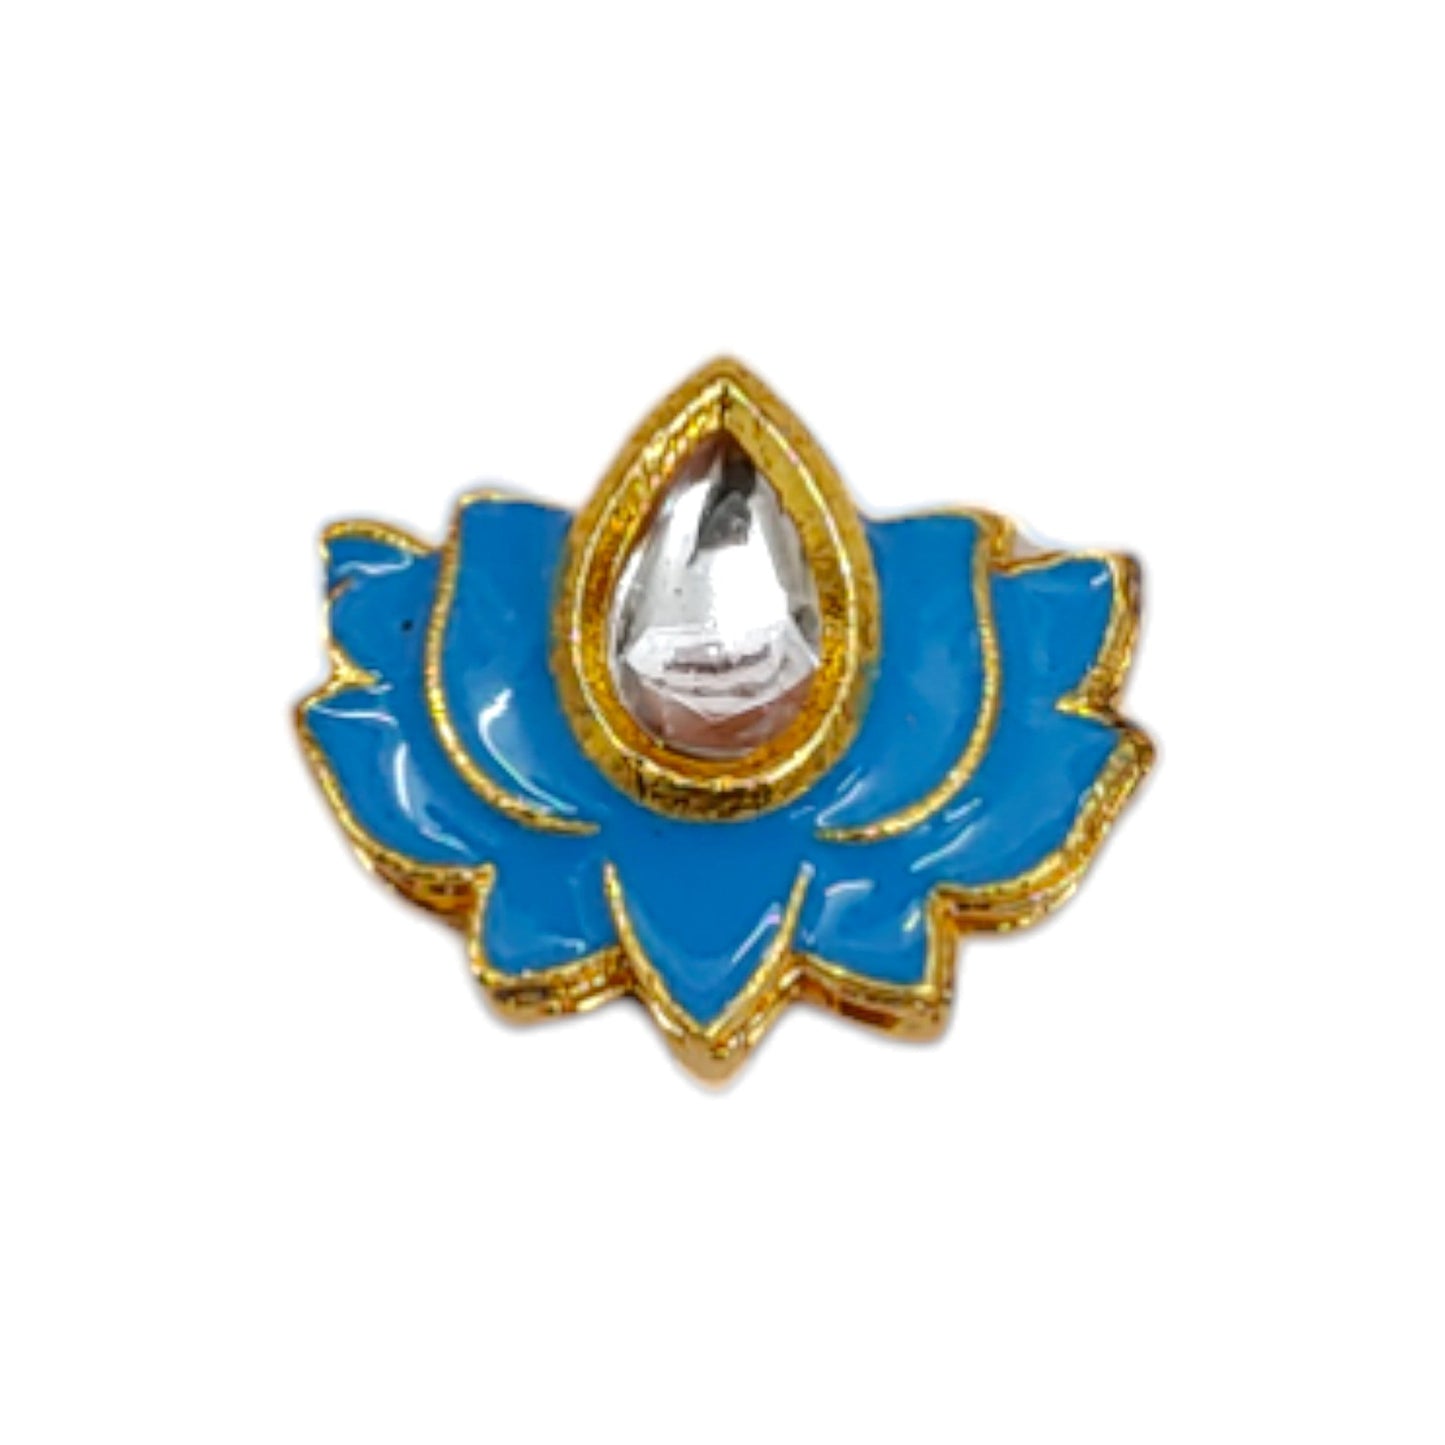 Lotus Shape Meena Metal Motif for Rakhi, Jewelry Designing, Craft or Decor - 12530 - 31